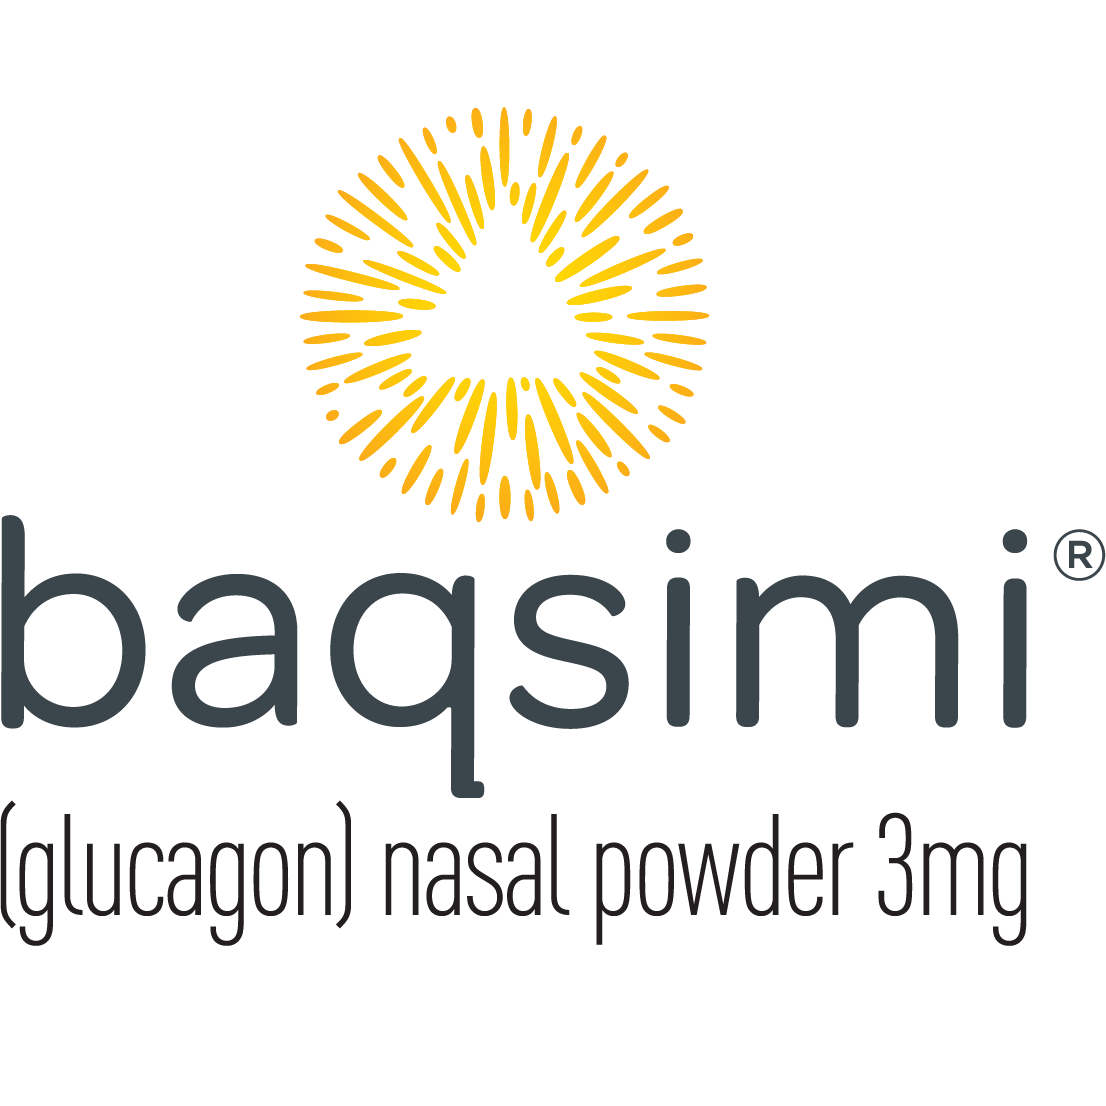 Baqsimi (glucagon) nasal poweder 3mg